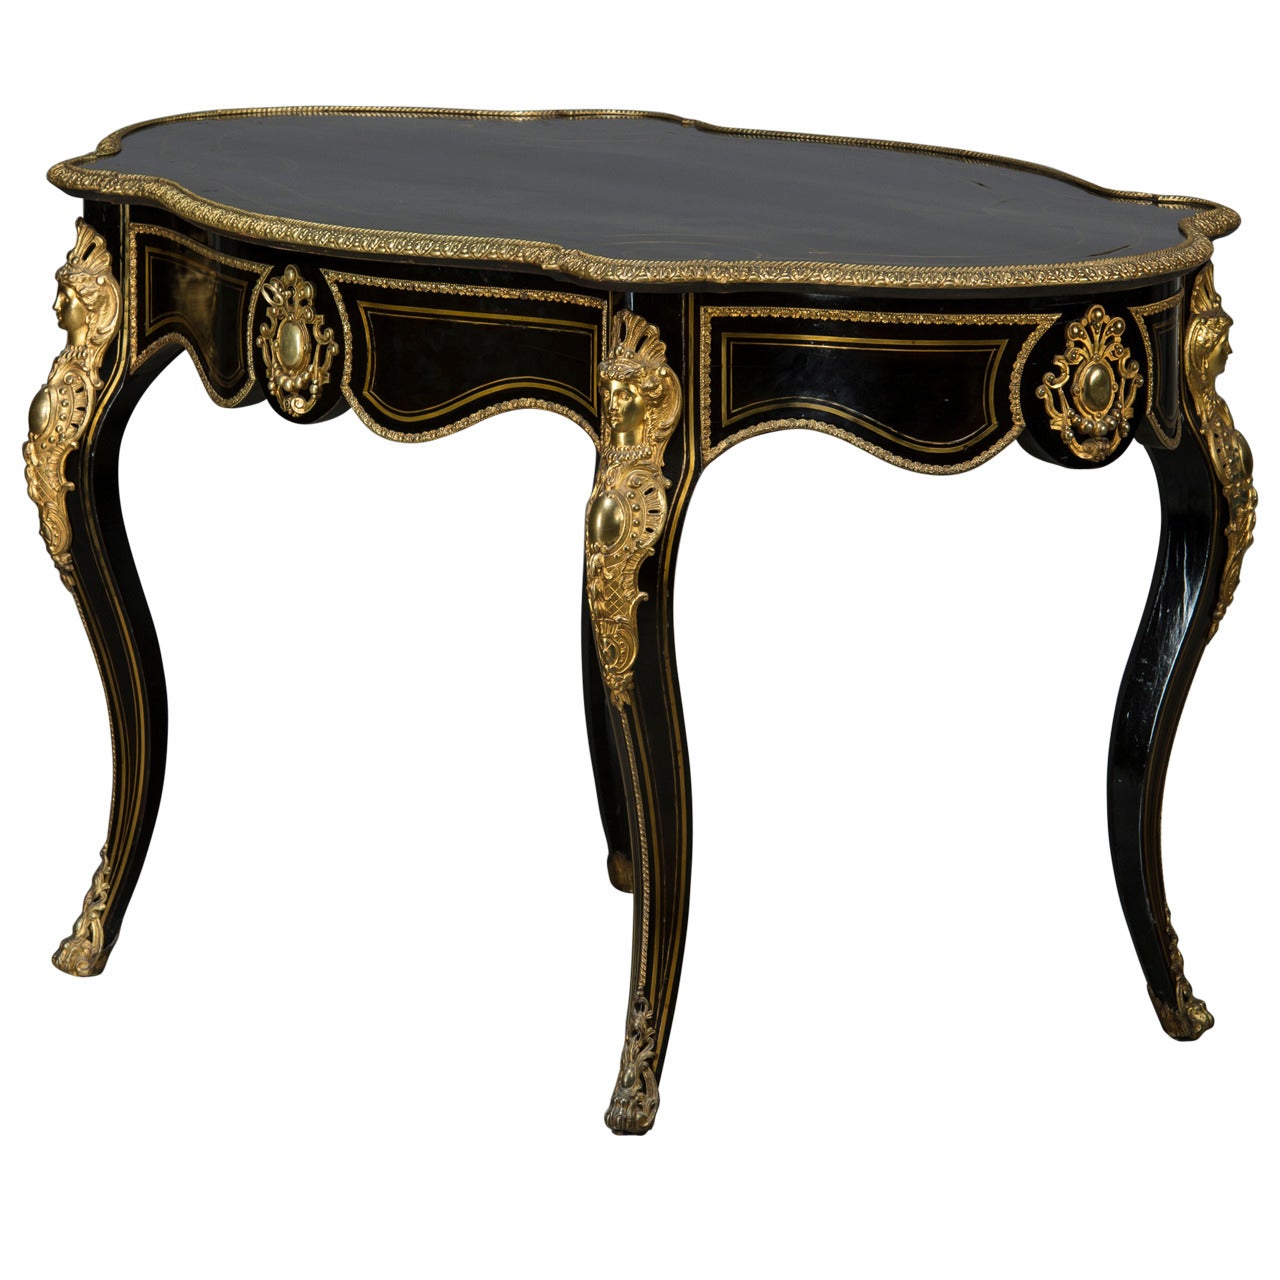 Frankreich, Napoleon III.-Tisch 1850-1870 mit Ebenholz- und Bronzebeschlägen aus Frankreich